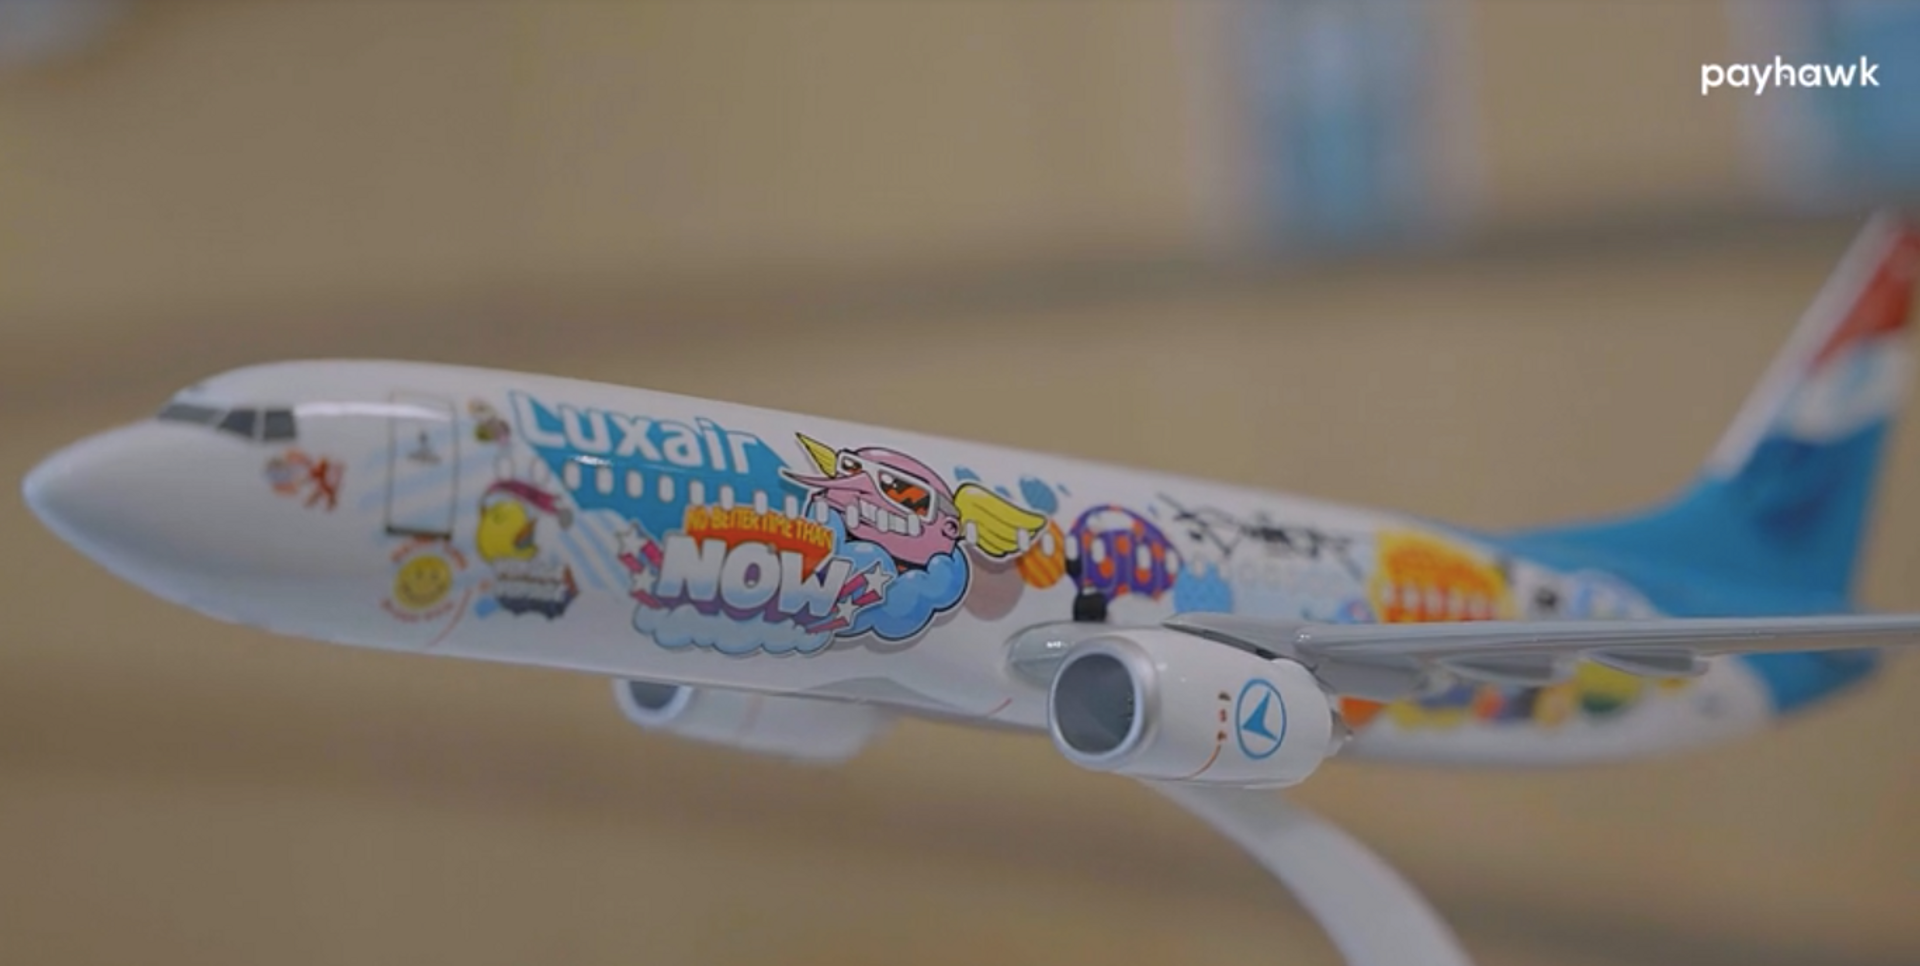 Uma imagem do avião de brinquedo da Luxair, com a equipa a partilhar a forma como o Payhawk a ajudou a tornar-se uma empresa sem dinheiro na parte de trás